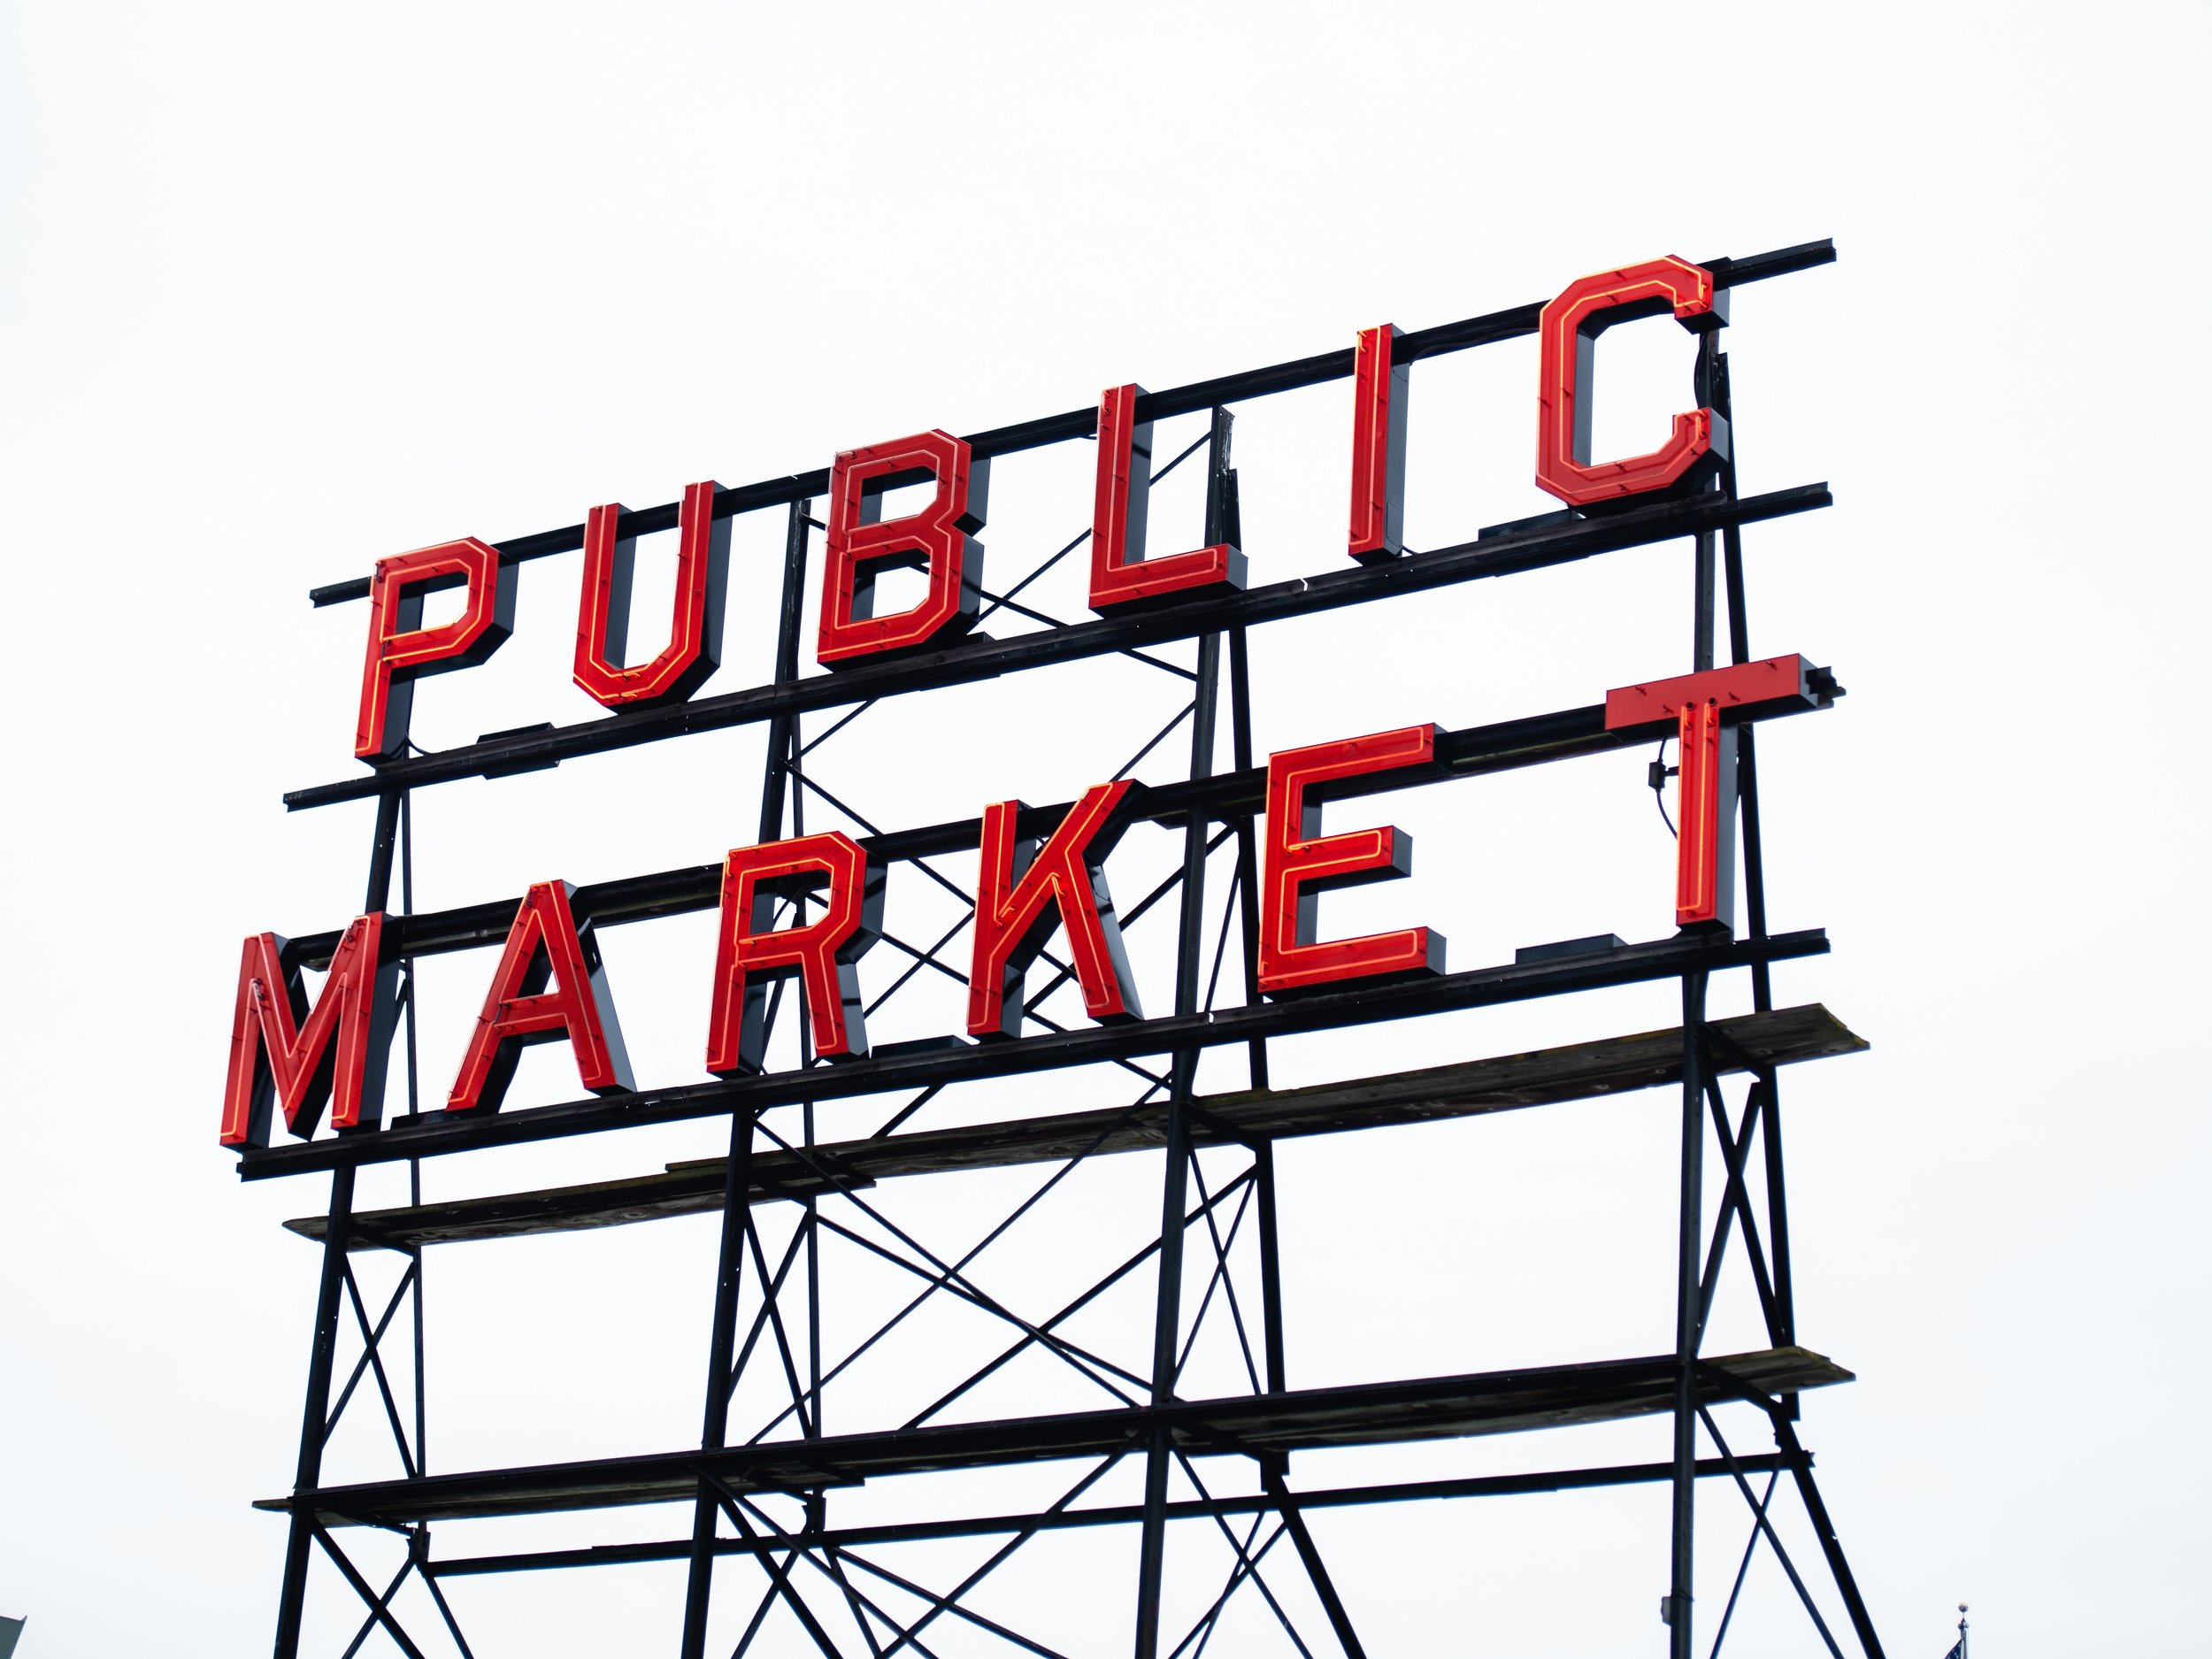 Insiders guide to seattle -public market - www.letsregale.com